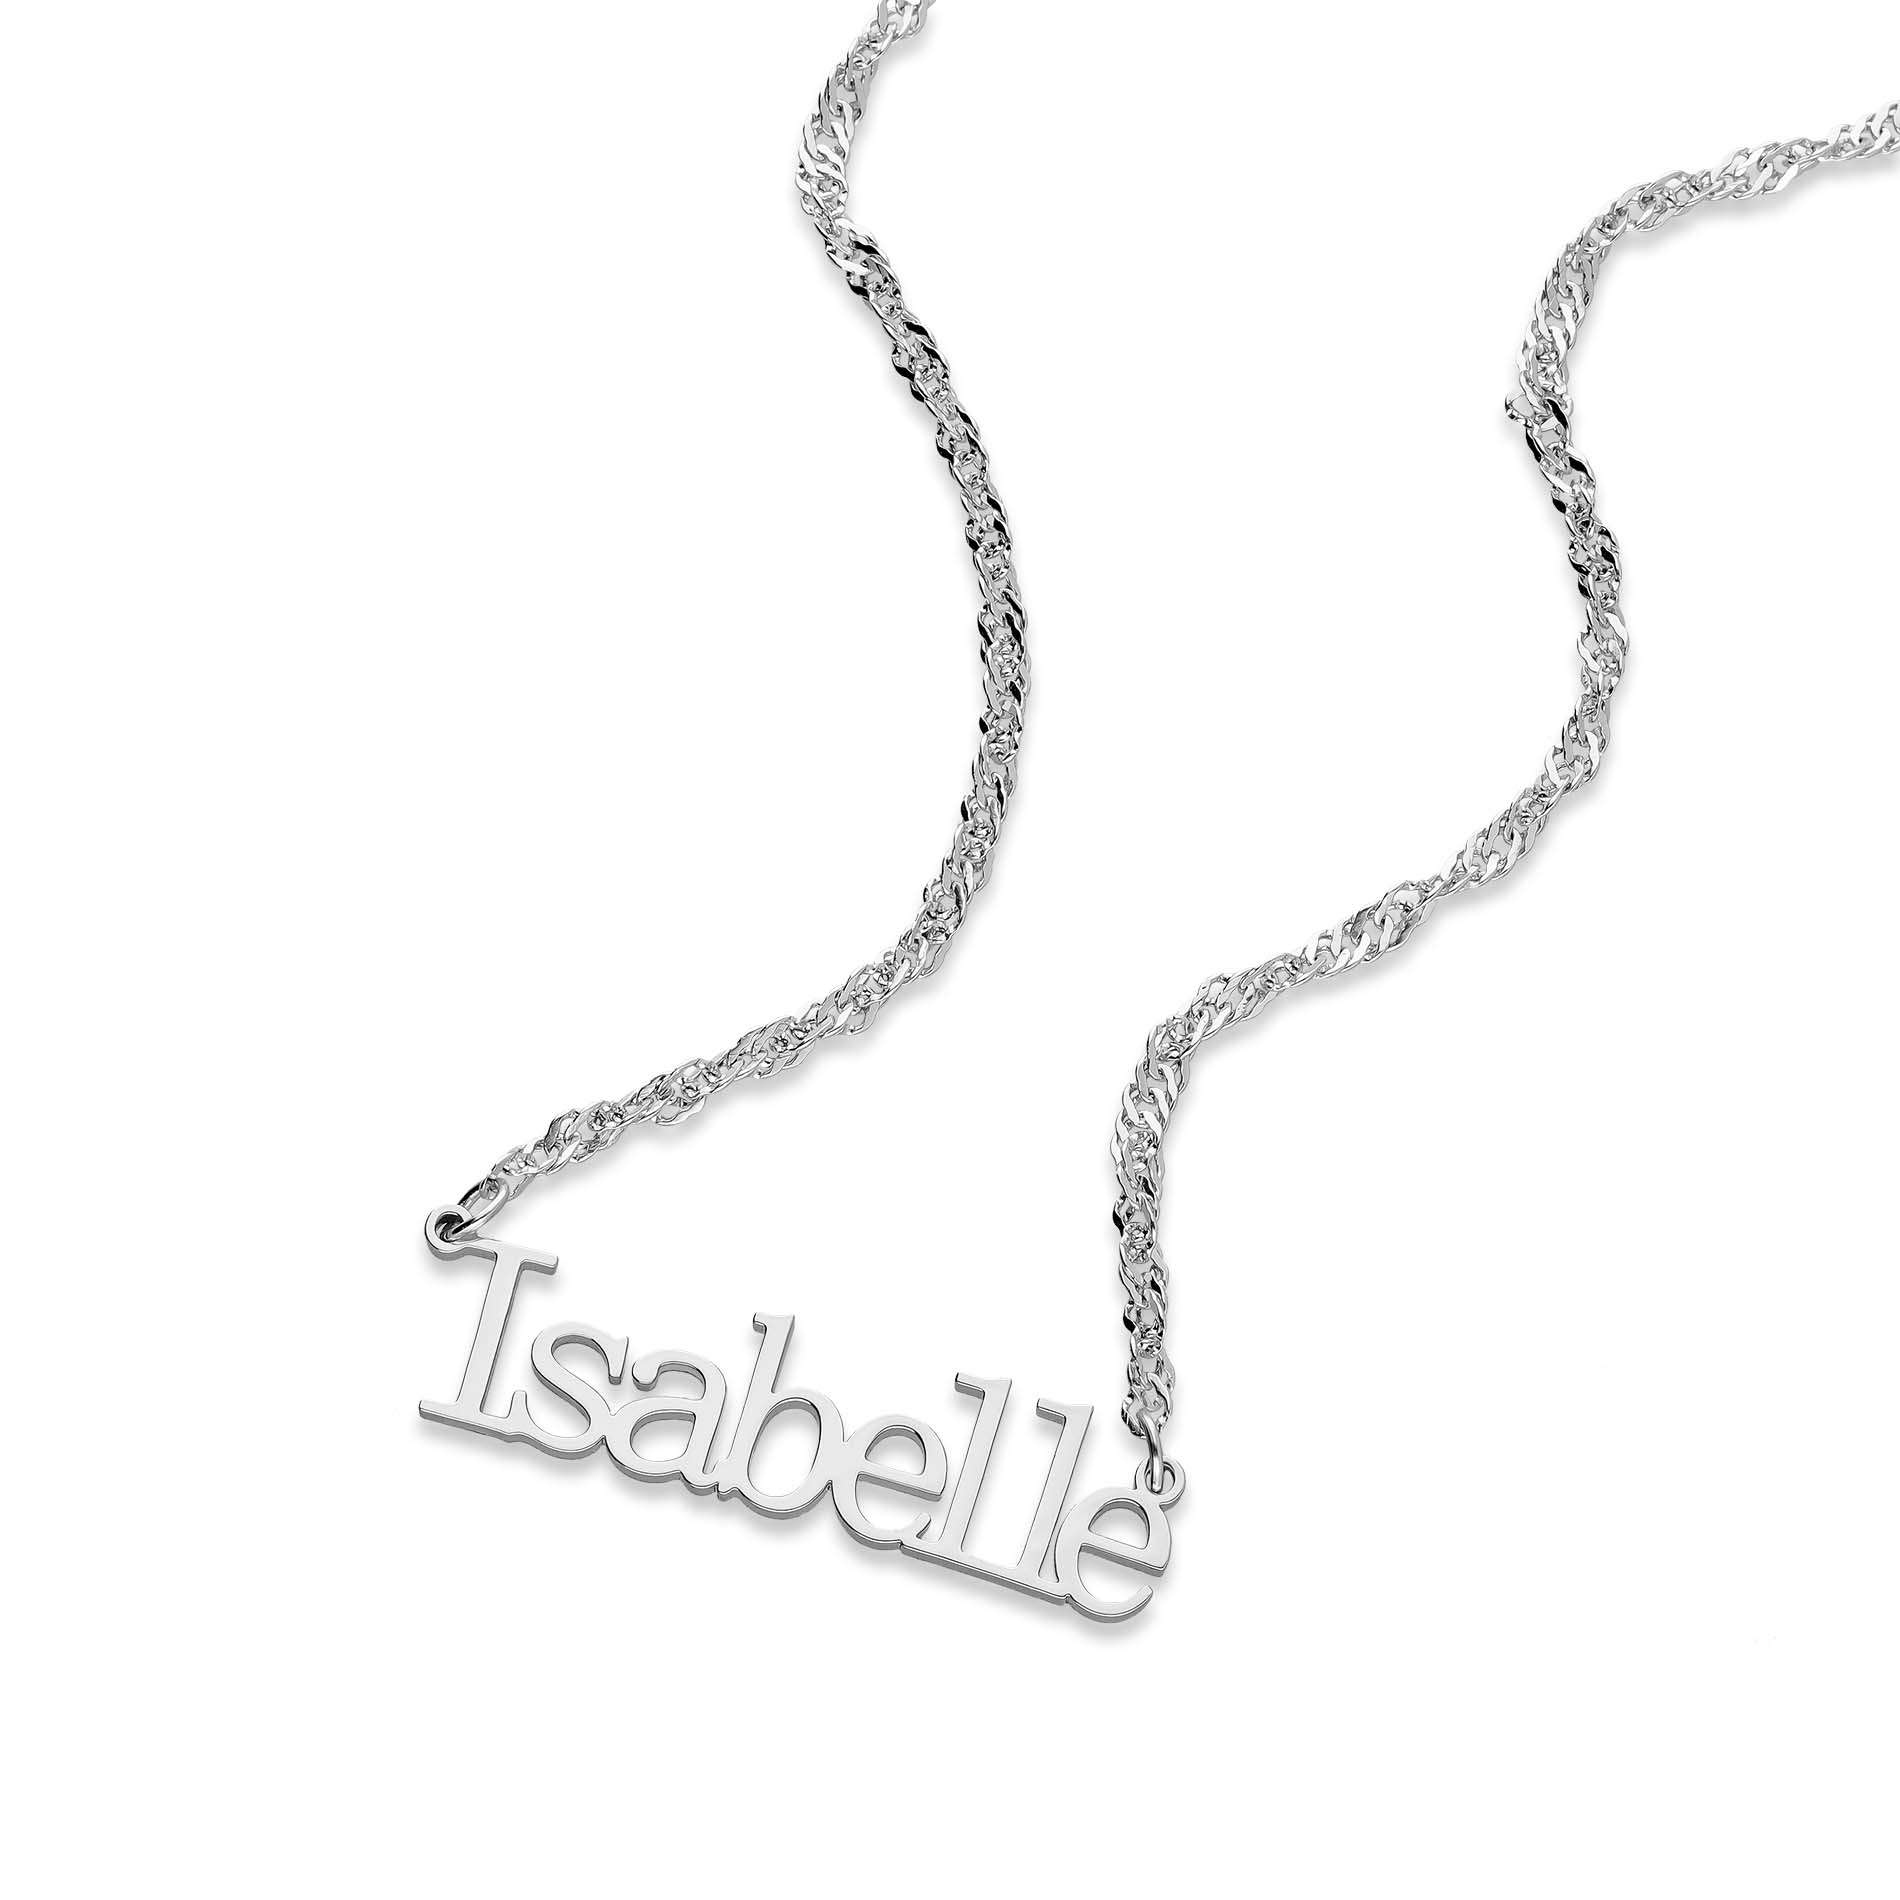 Vivola name necklace silver